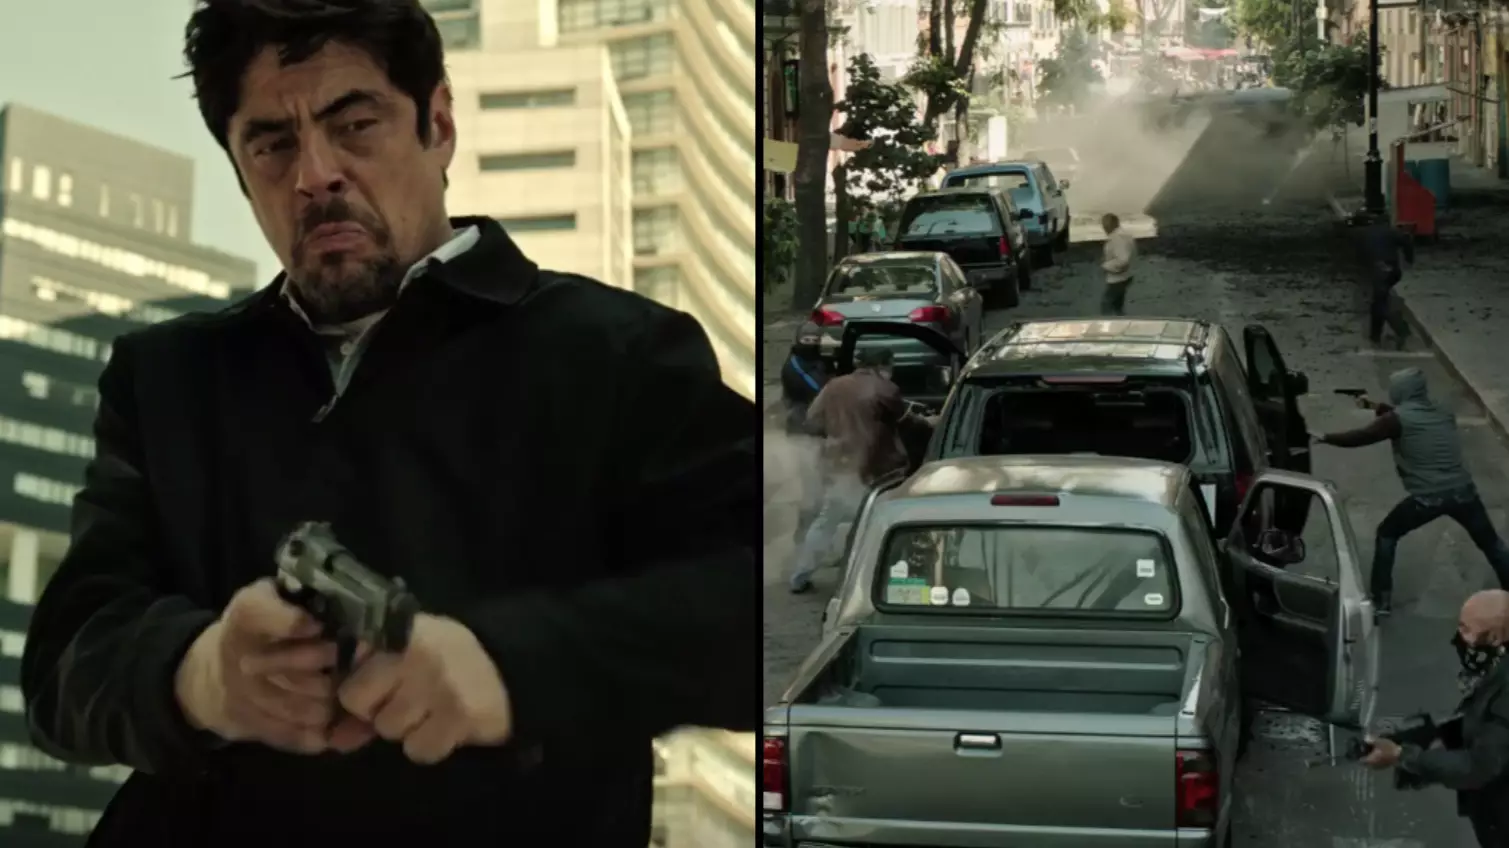 Benicio Del Toro Returns In Trailer For Sicario 2: Soldado